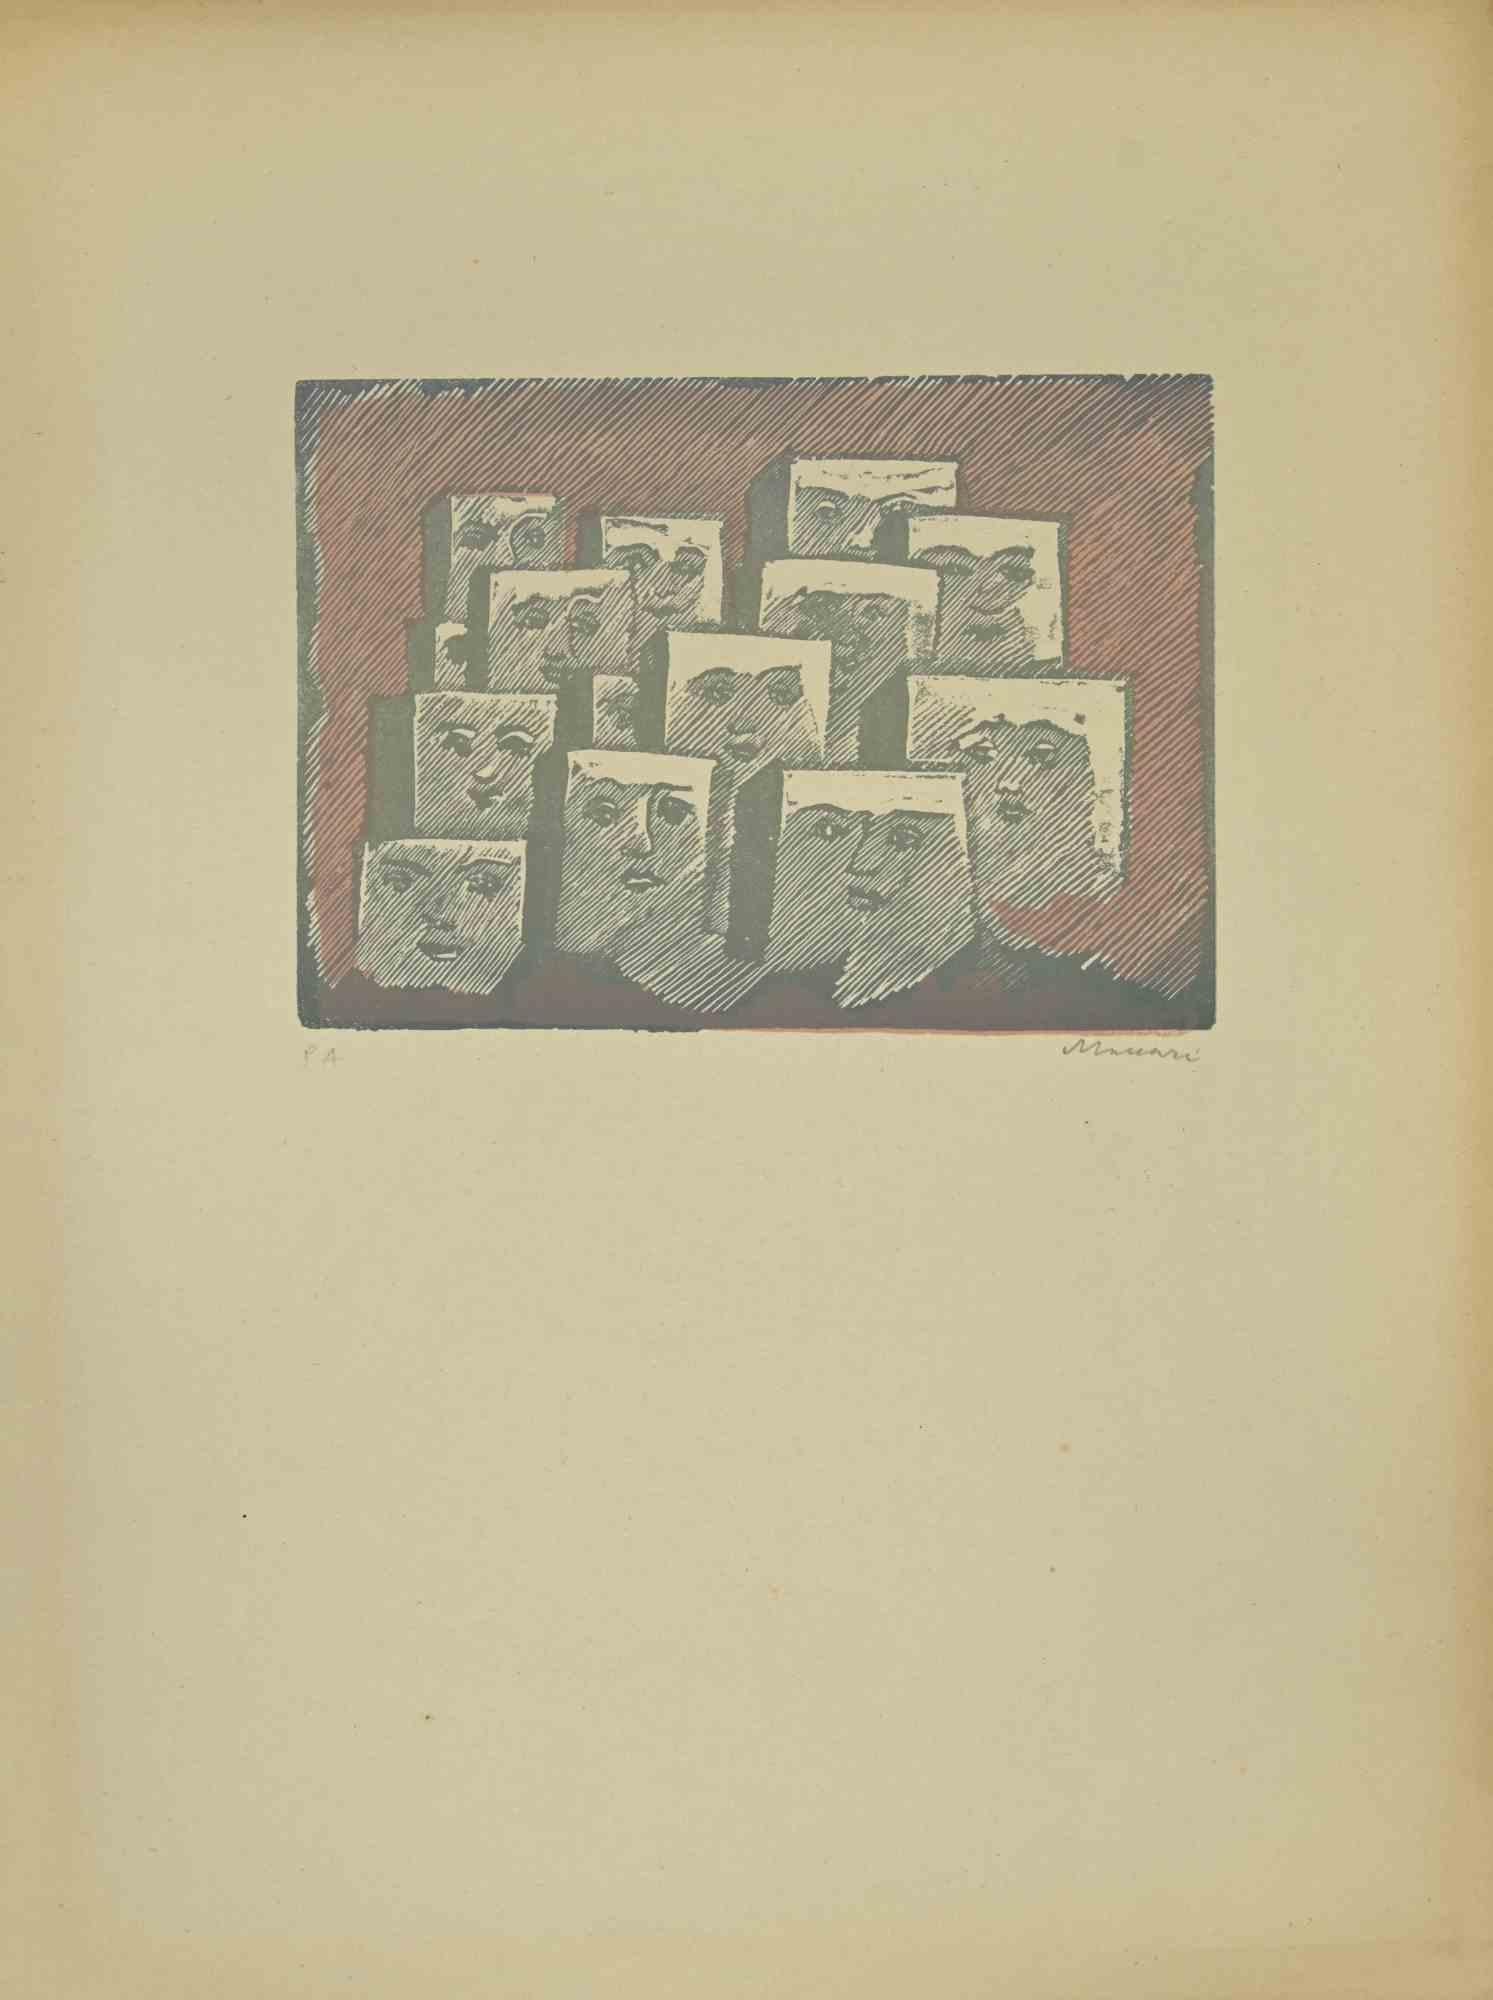 Faces est une linogravure  réalisé  par Mino Maccari dans les années 1940.

50 x 30 cm.

Signé à la main dans la partie inférieure droite. Édition de 12 exemplaires.

Référence ; Cat. Meloni , pag 367, n.1741.

Bonnes conditions.

 

Mino Maccari